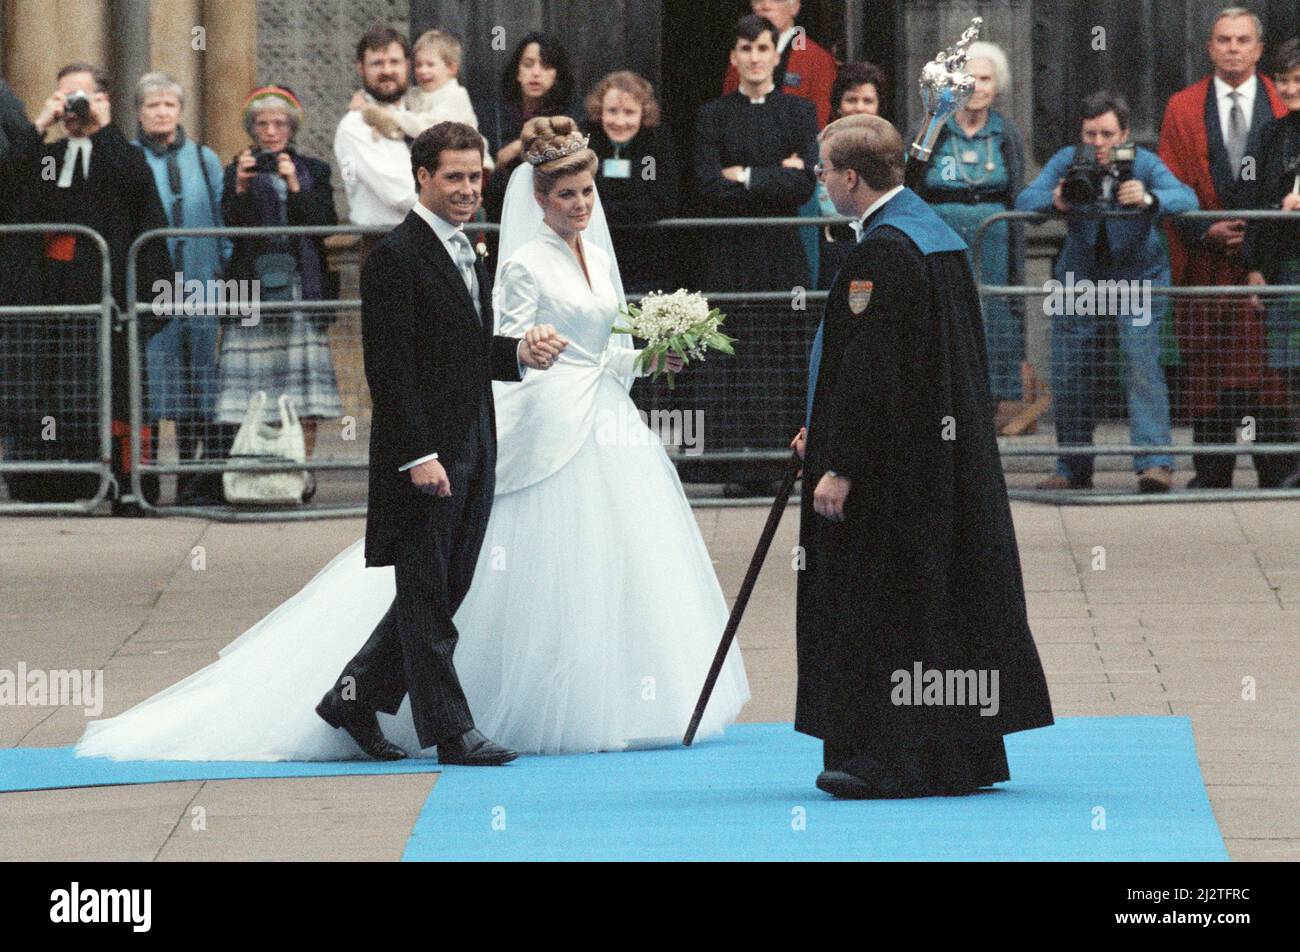 Le mariage de David Armstrong-Jones, vicomte Linley, à Serena Stanhope, à l'église St Margare, Westminster. 8th octobre 1993. Banque D'Images